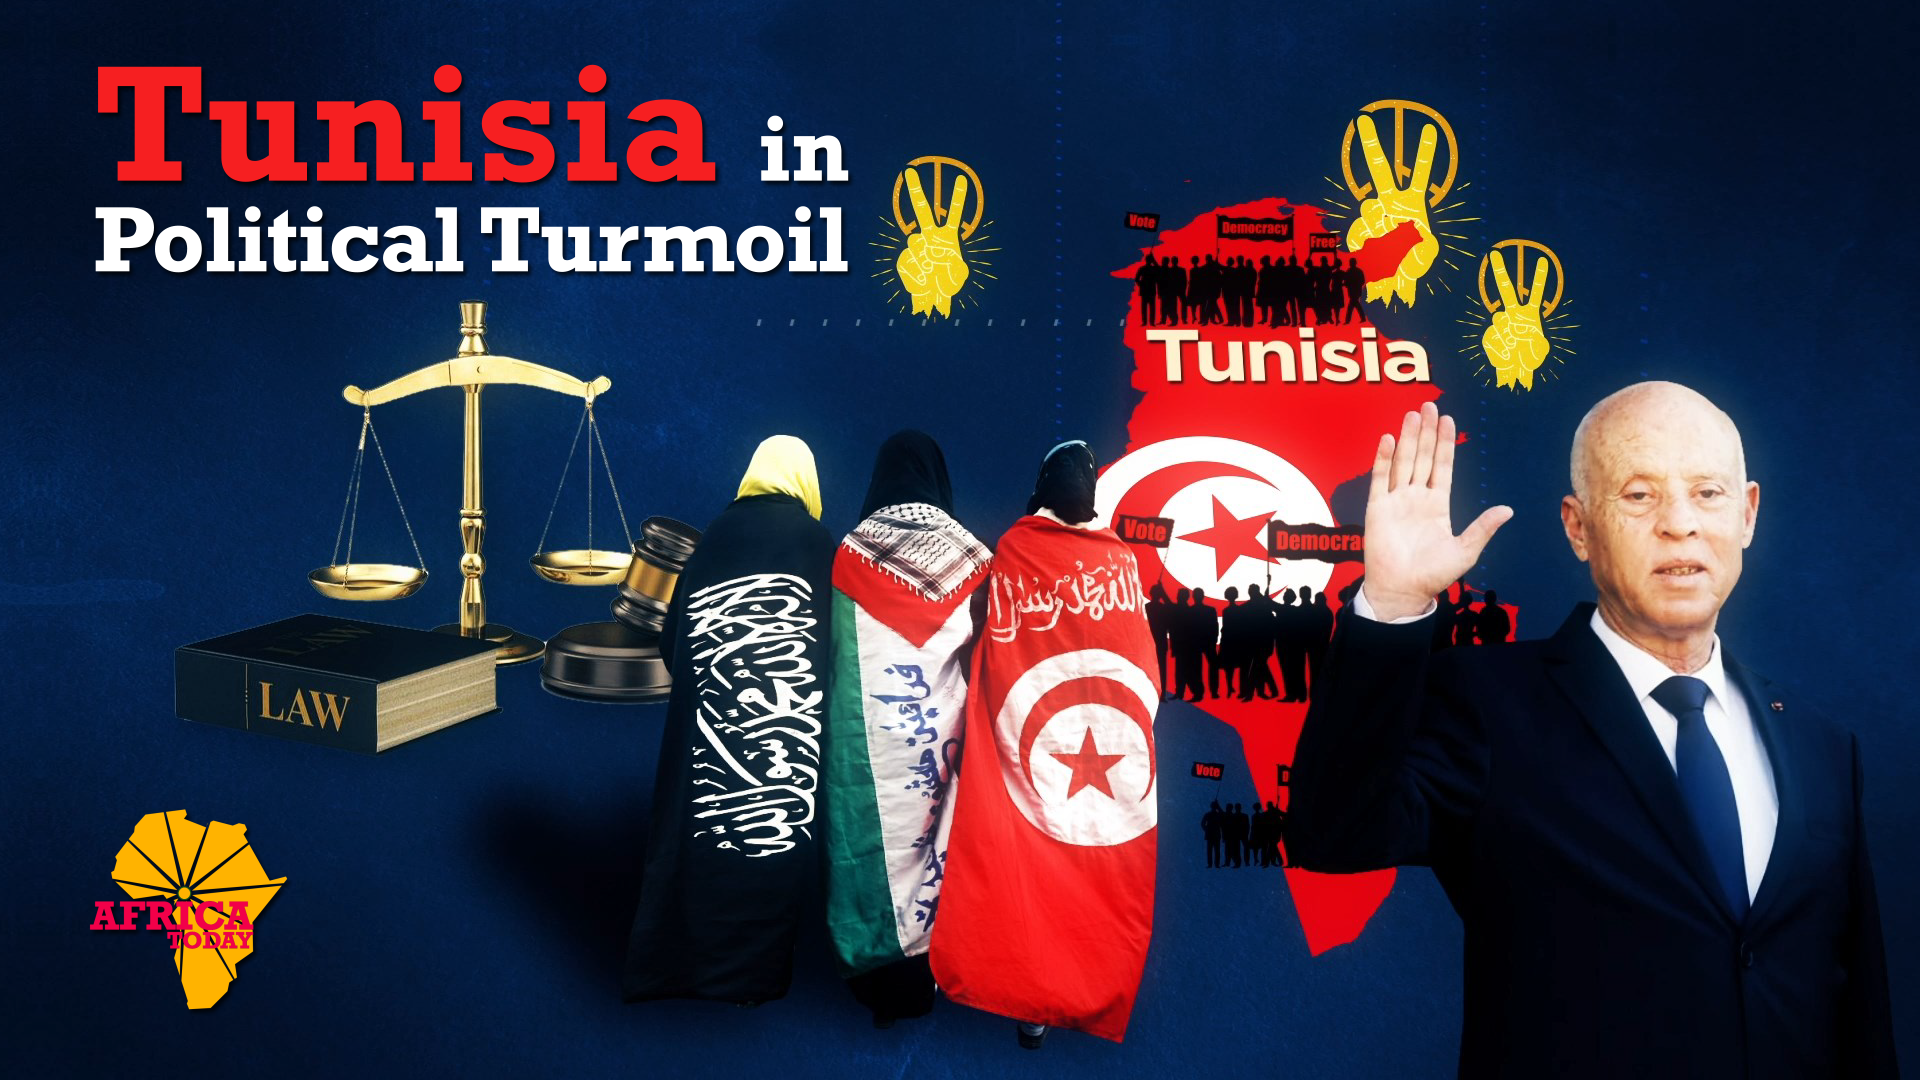 Political turmoil in Tunisia